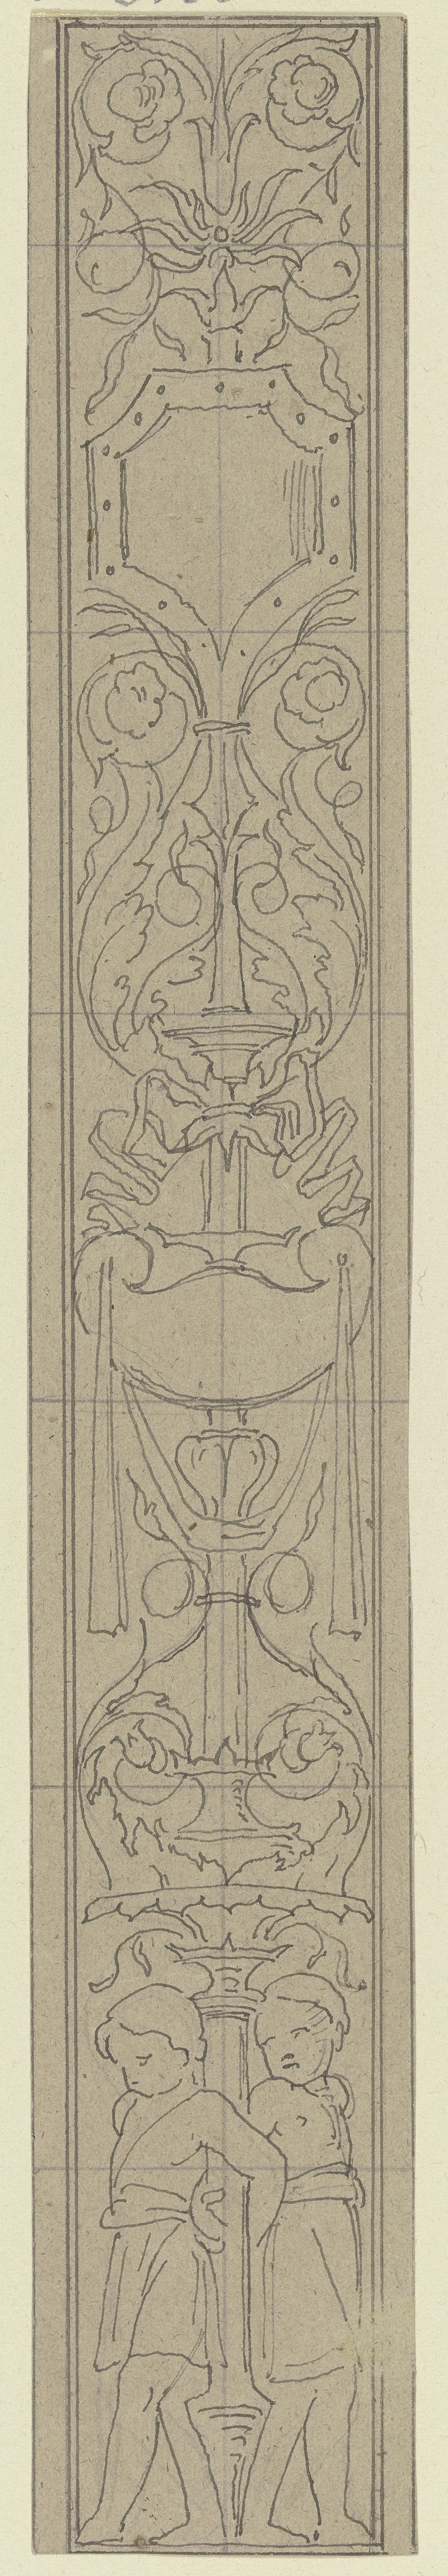 Eduard von Steinle - Ornament zur Einfassung der Veitschen Freskobilder im Städelschen Institut